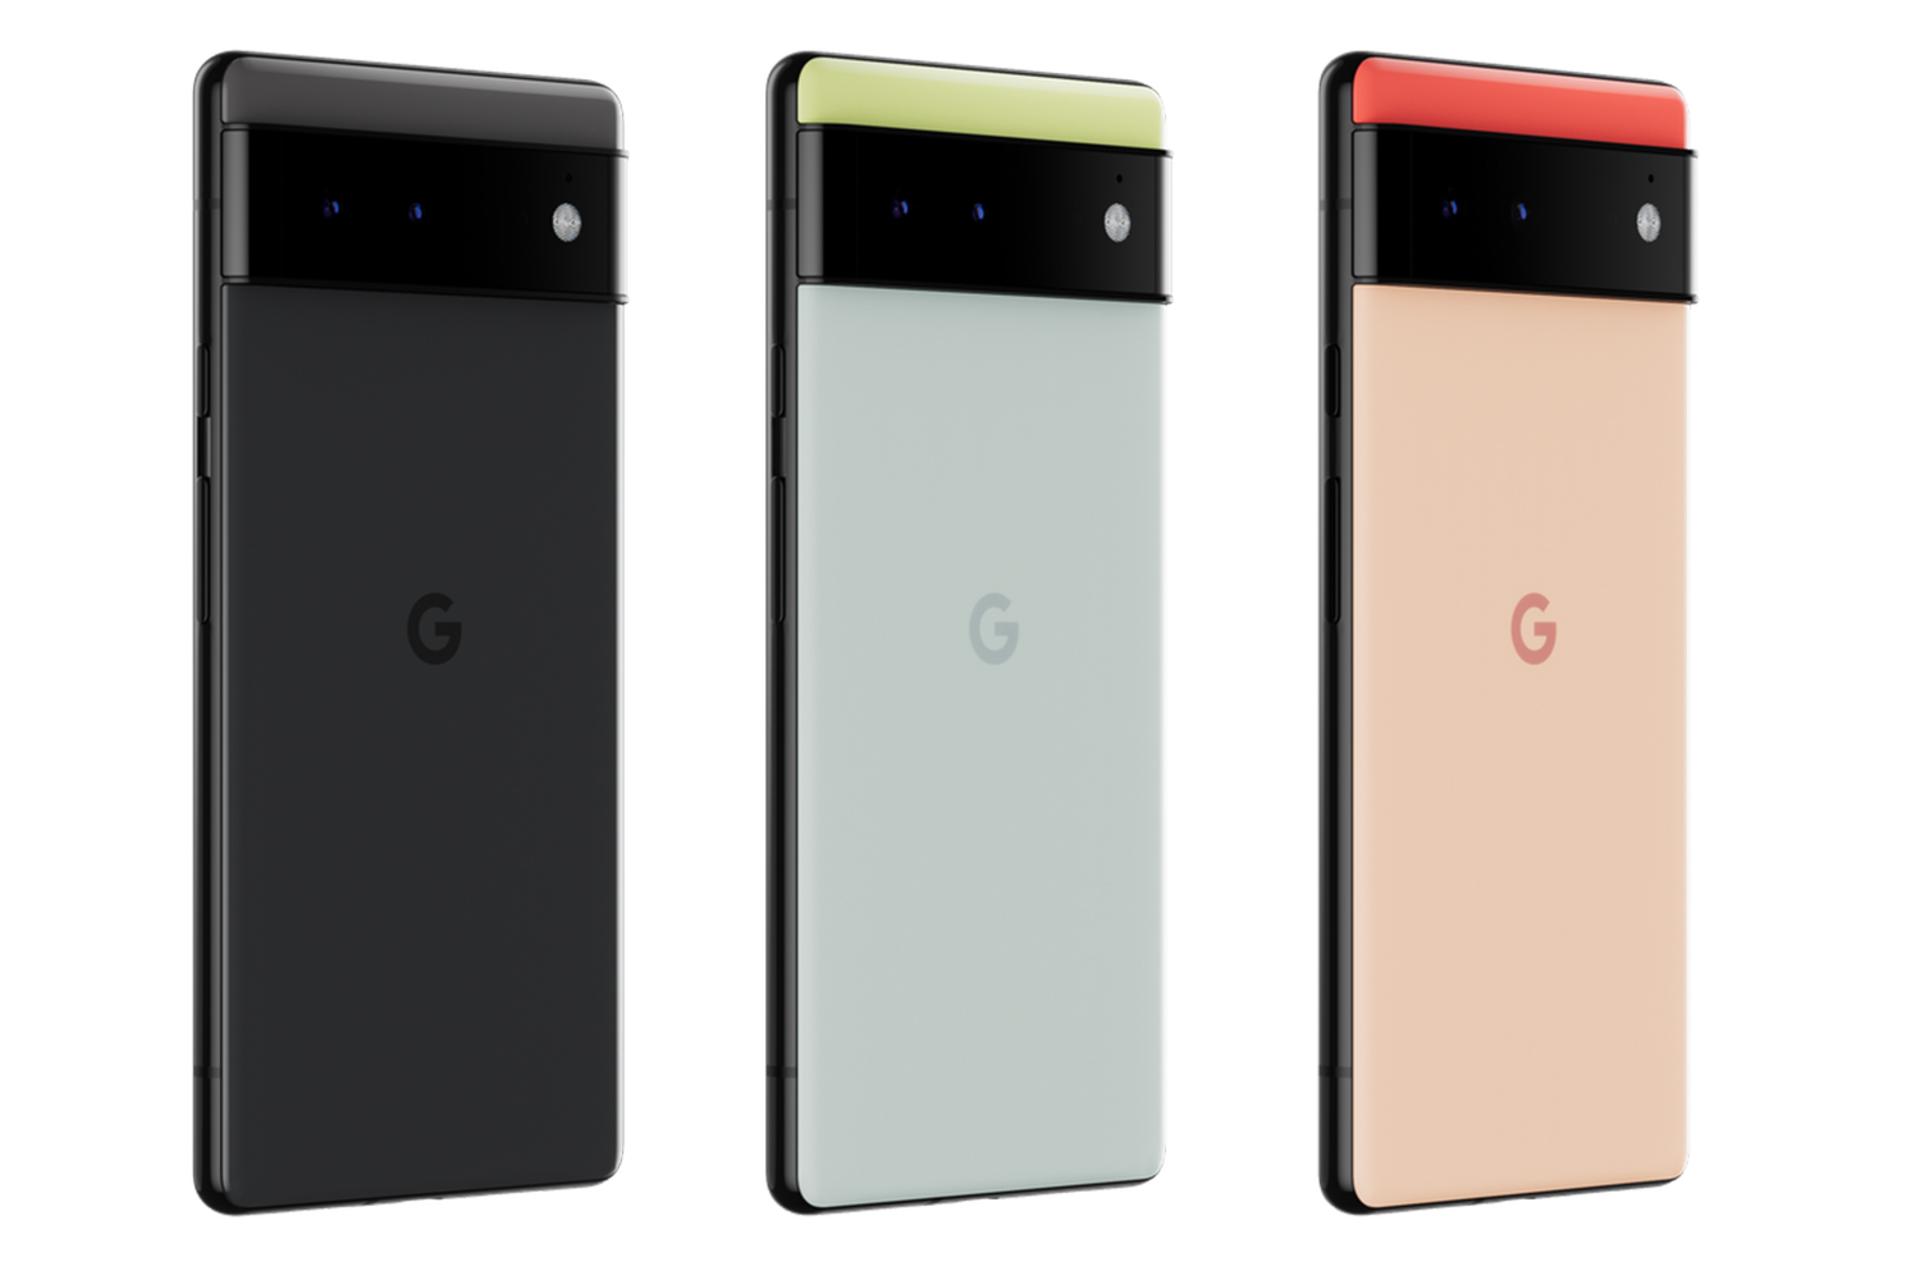 رنگ های مختلف گوشی موبایل پیکسل 6 گوگل / Google Pixel 6